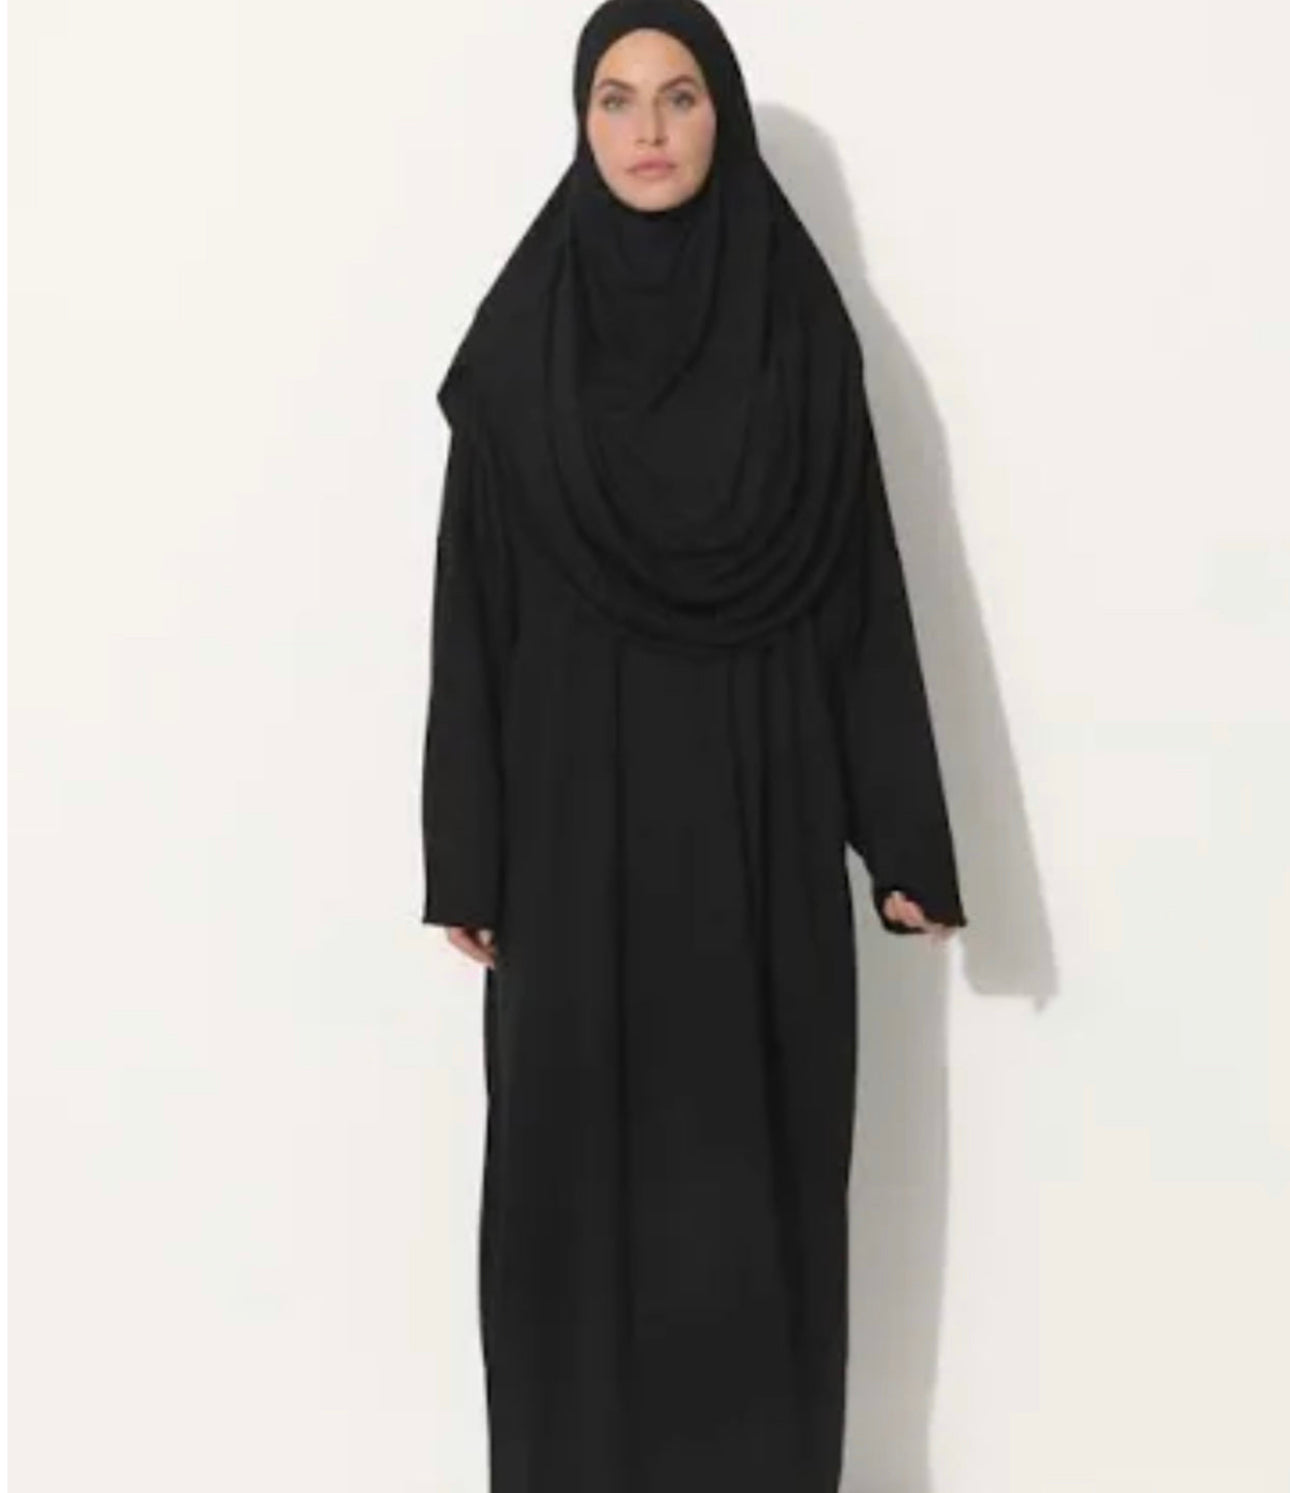 Deluxe Hijabi starter kit